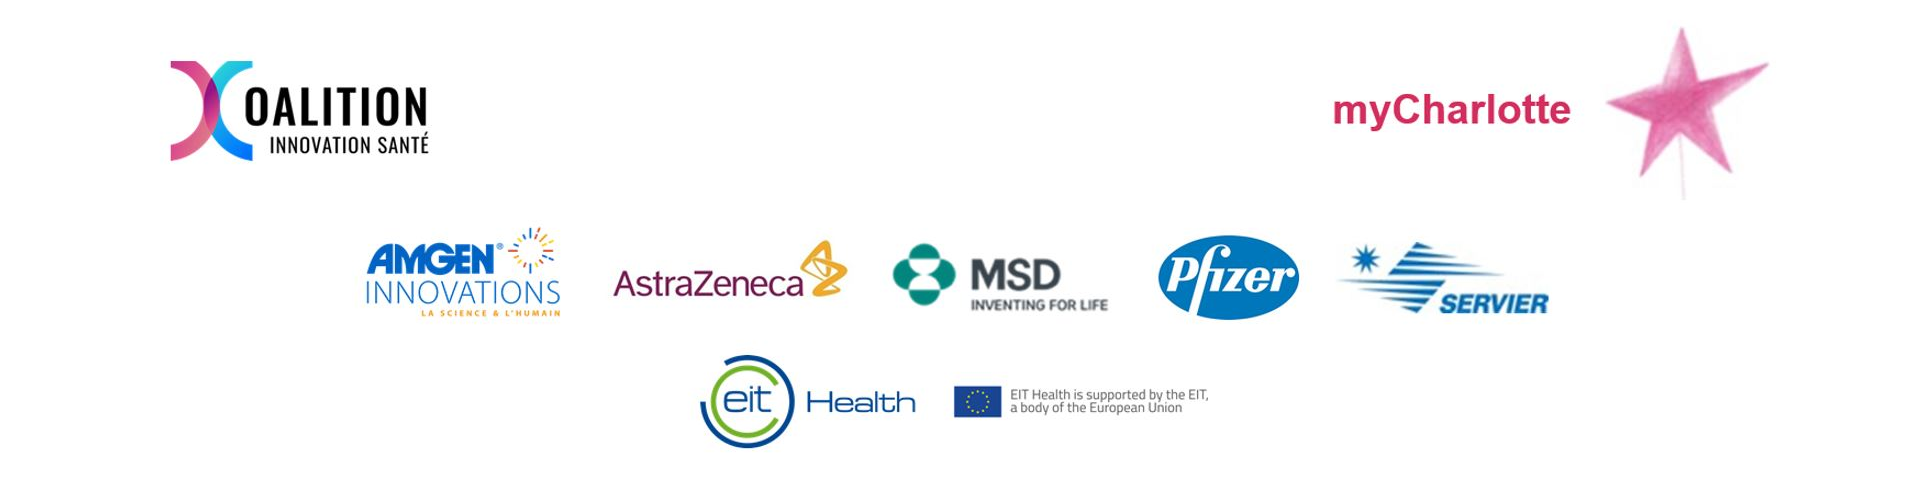 logos des entreprises soutenant la Coalition Innovation Santé